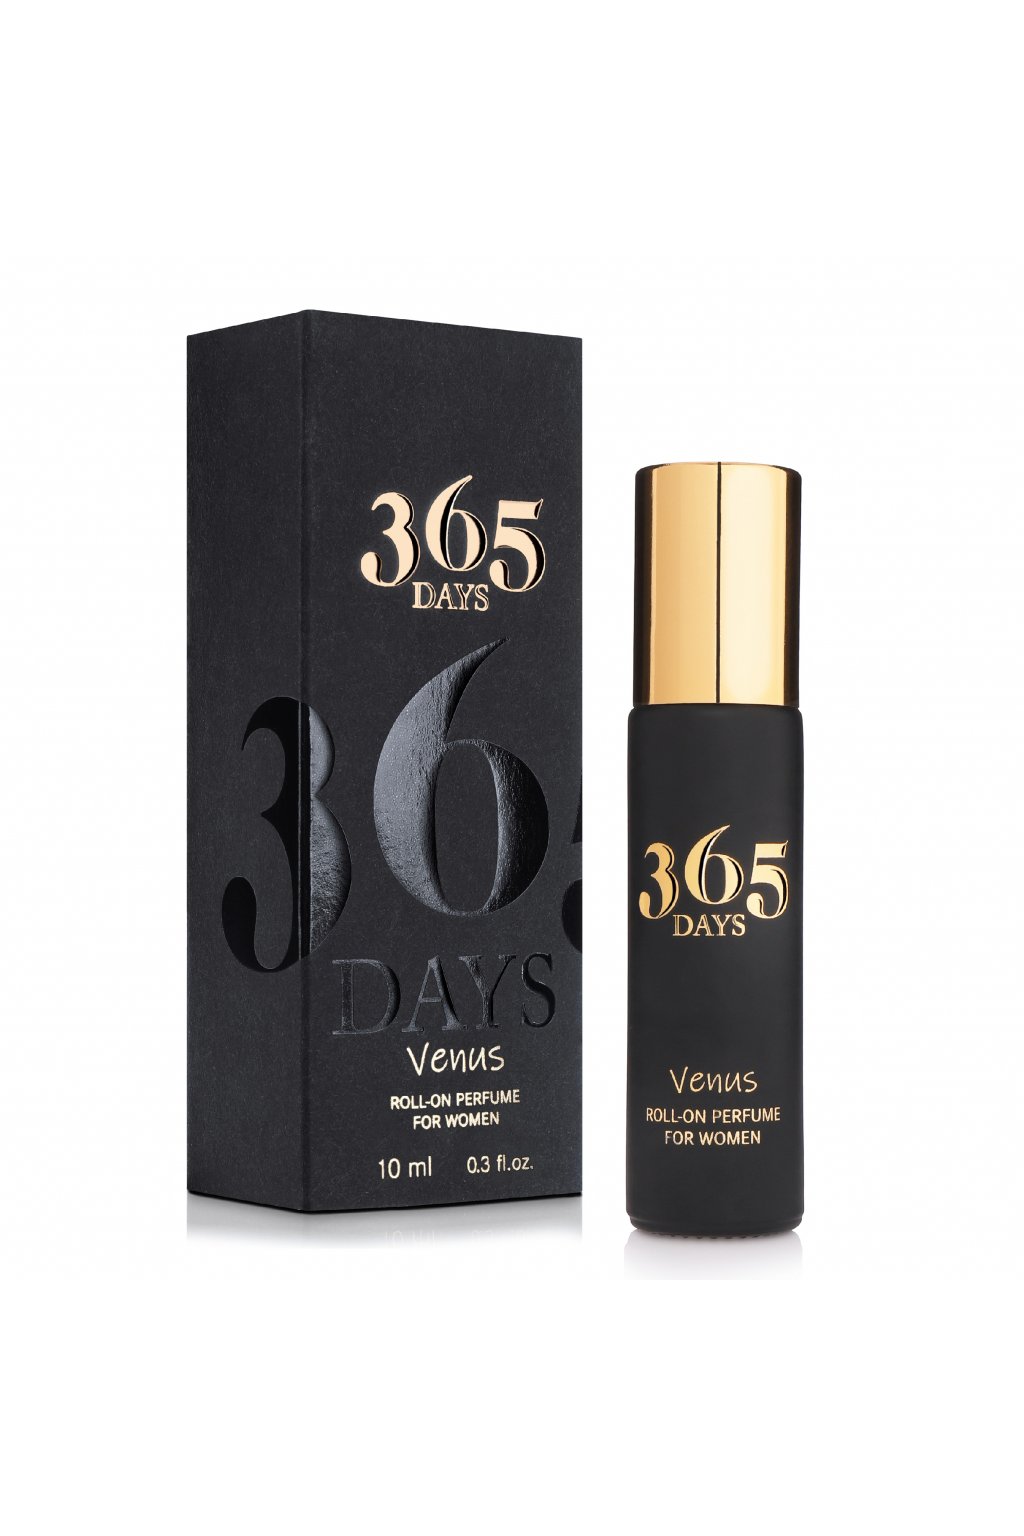 365 Days Venus Roll-on Parfum pre ženy 10 ml - Neness Official SK